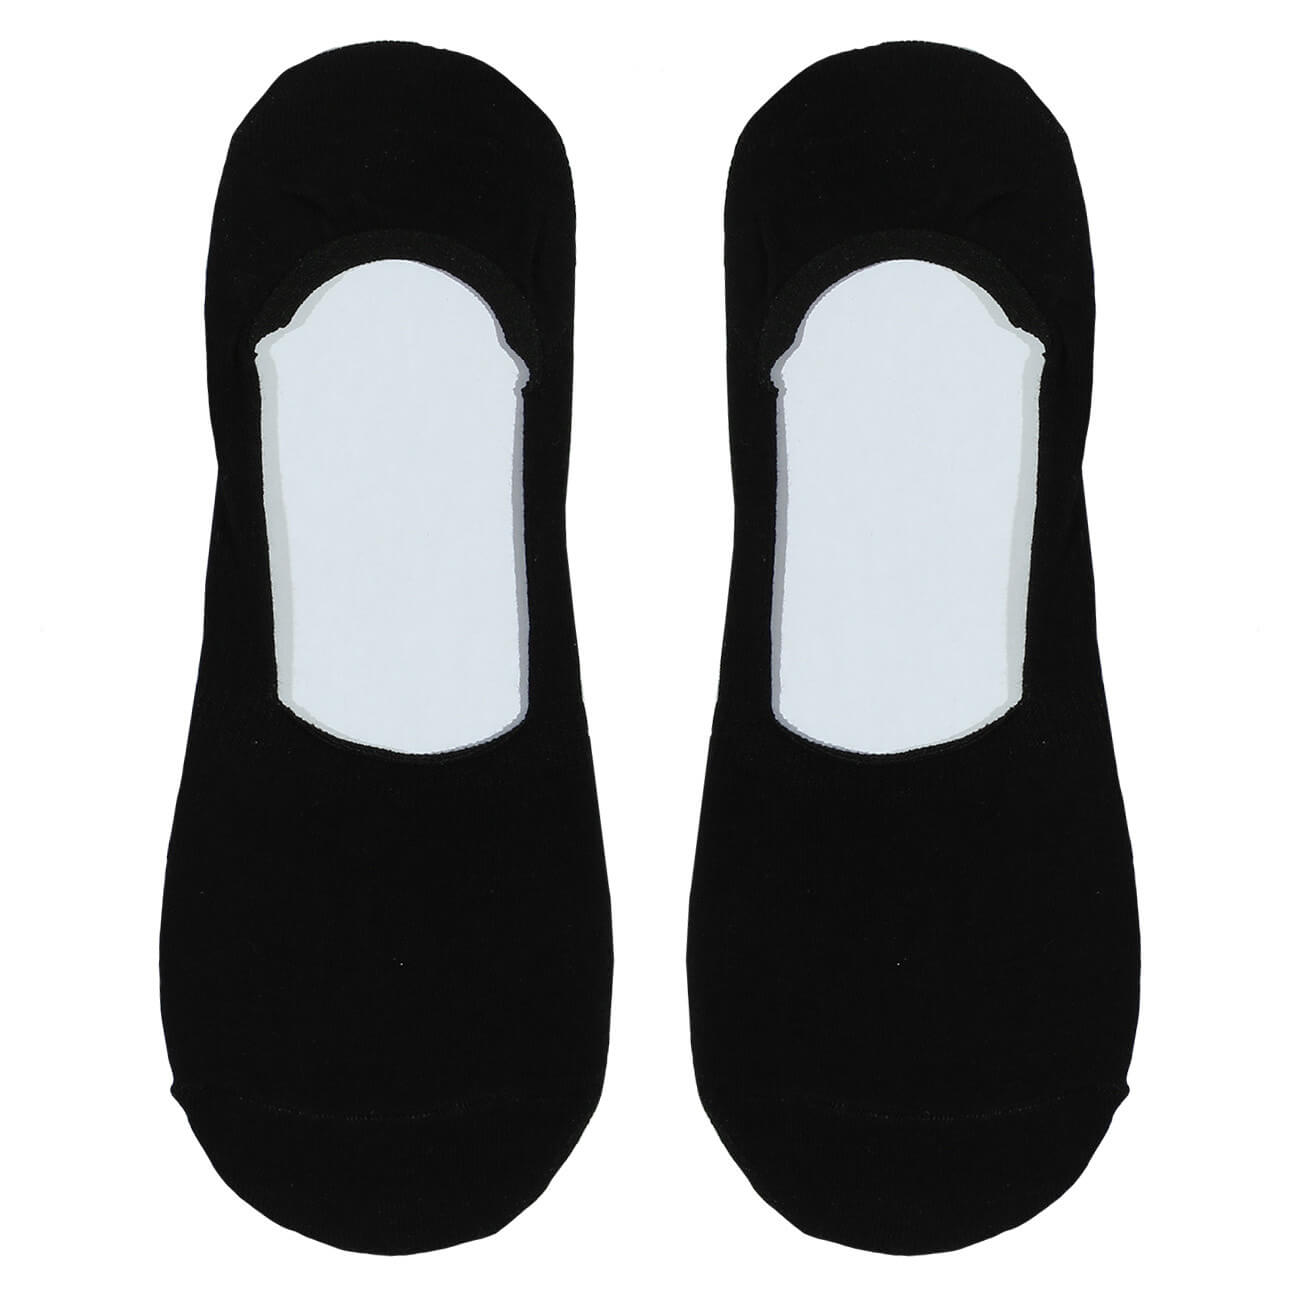 Носки-следки женские, р. 36-38, хлопок/полиэстер, черные, Basic носки следки мужские р 43 46 хлопок полиэстер черные basic